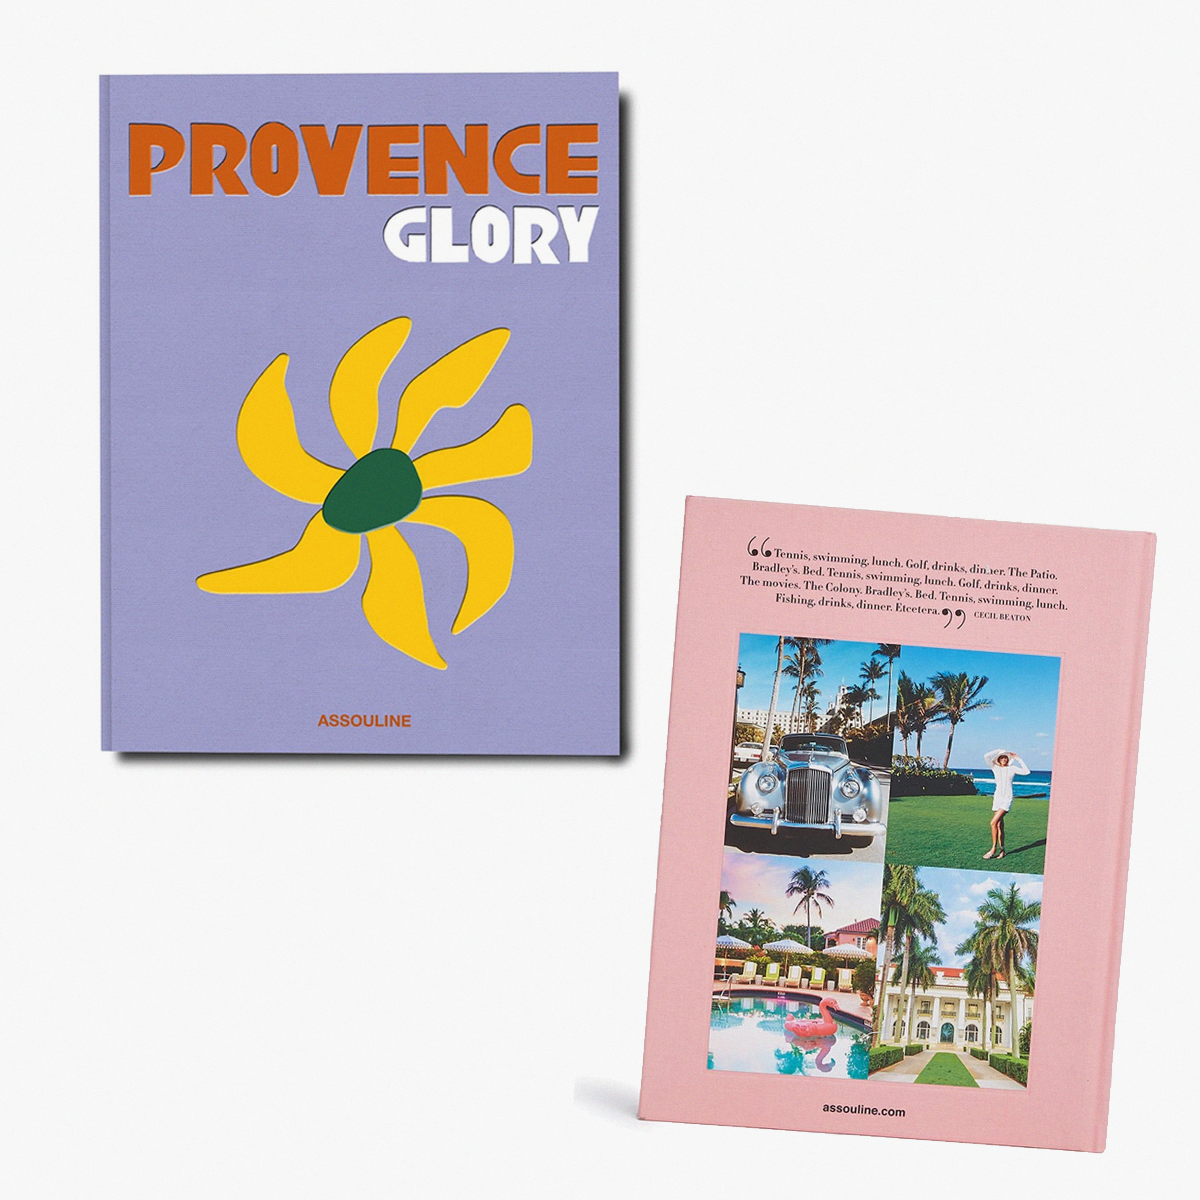 Книга Assouline Provence Glory 7763 рубля farfetch.com книга Assouline Palm Beach 9448 рублей farfetch.com